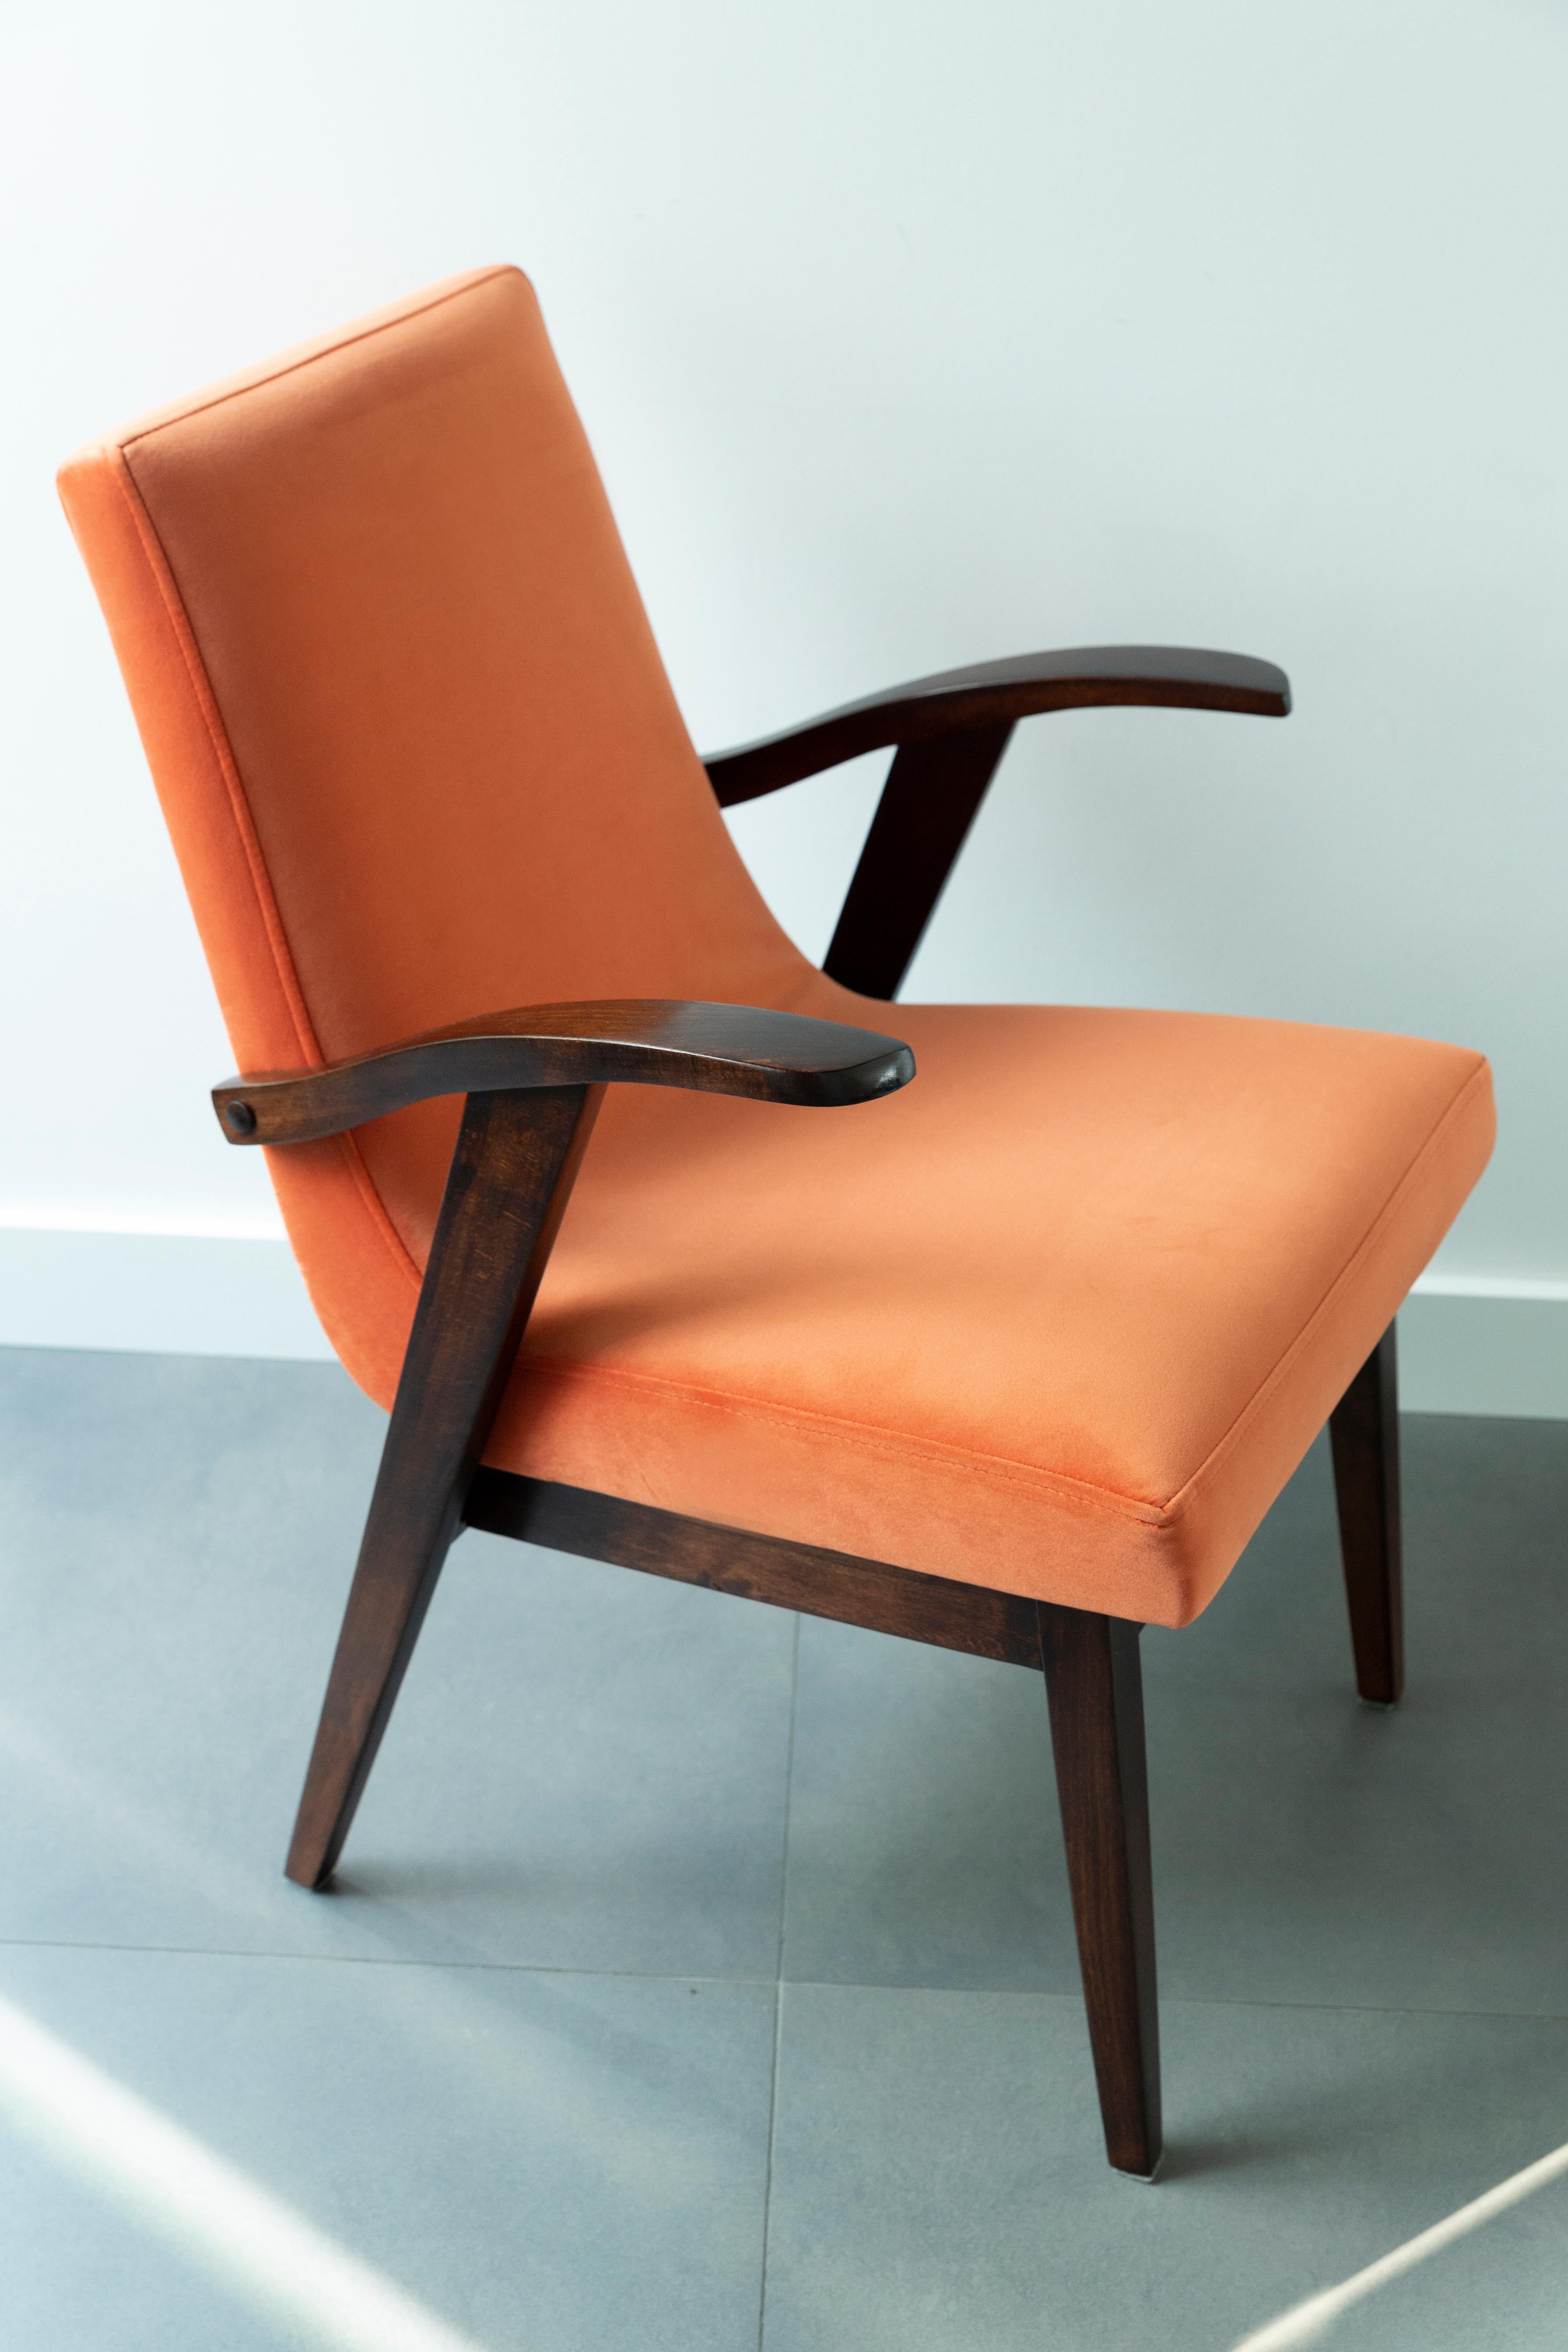 Chaises conçues par Mieczyslaw Puchala. Le bois brun foncé associé à un beau velours orange lui confère élégance et noblesse. Les chaises ont fait l'objet d'une rénovation complète de la menuiserie et du rembourrage. Le bois est en excellent état